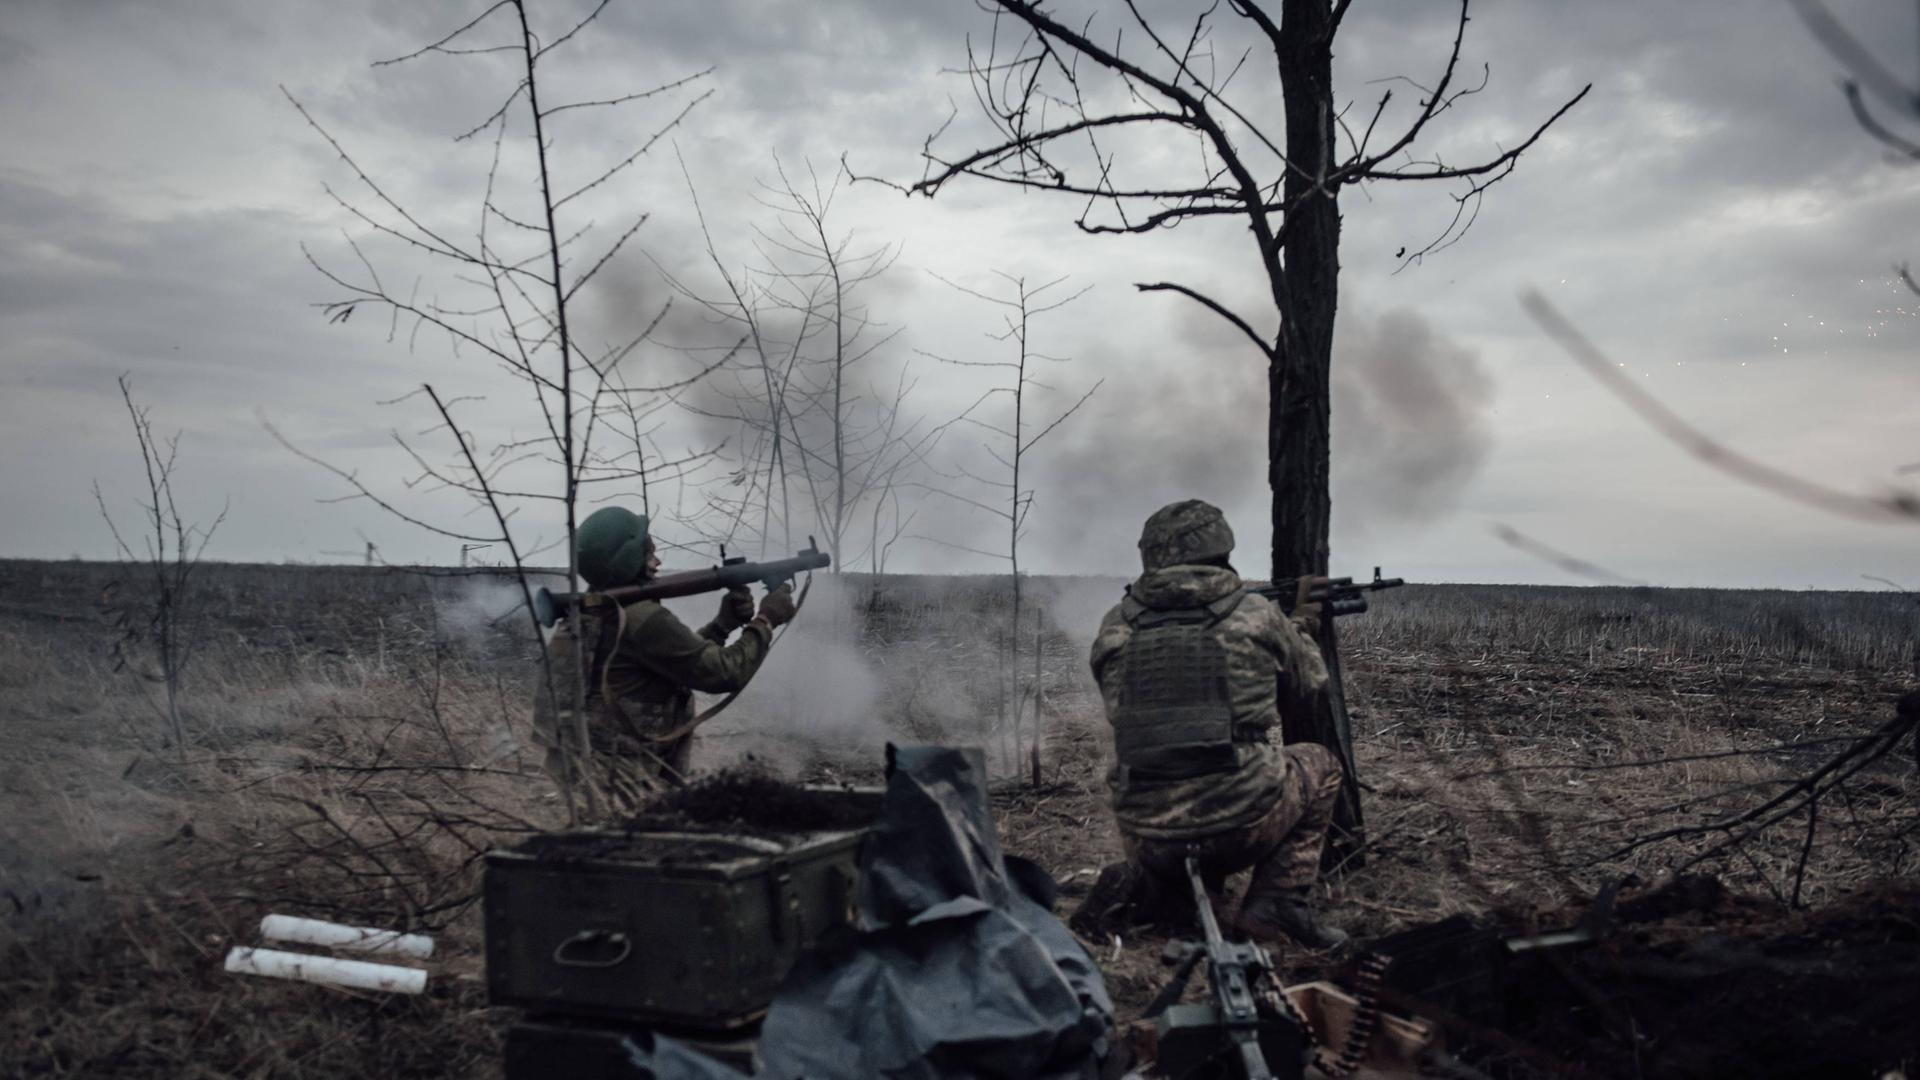 Ukrainische Soldaten in der Nähe der Frontlinie, die russischen Truppen sollen nur 200 Meter entfernt stehen